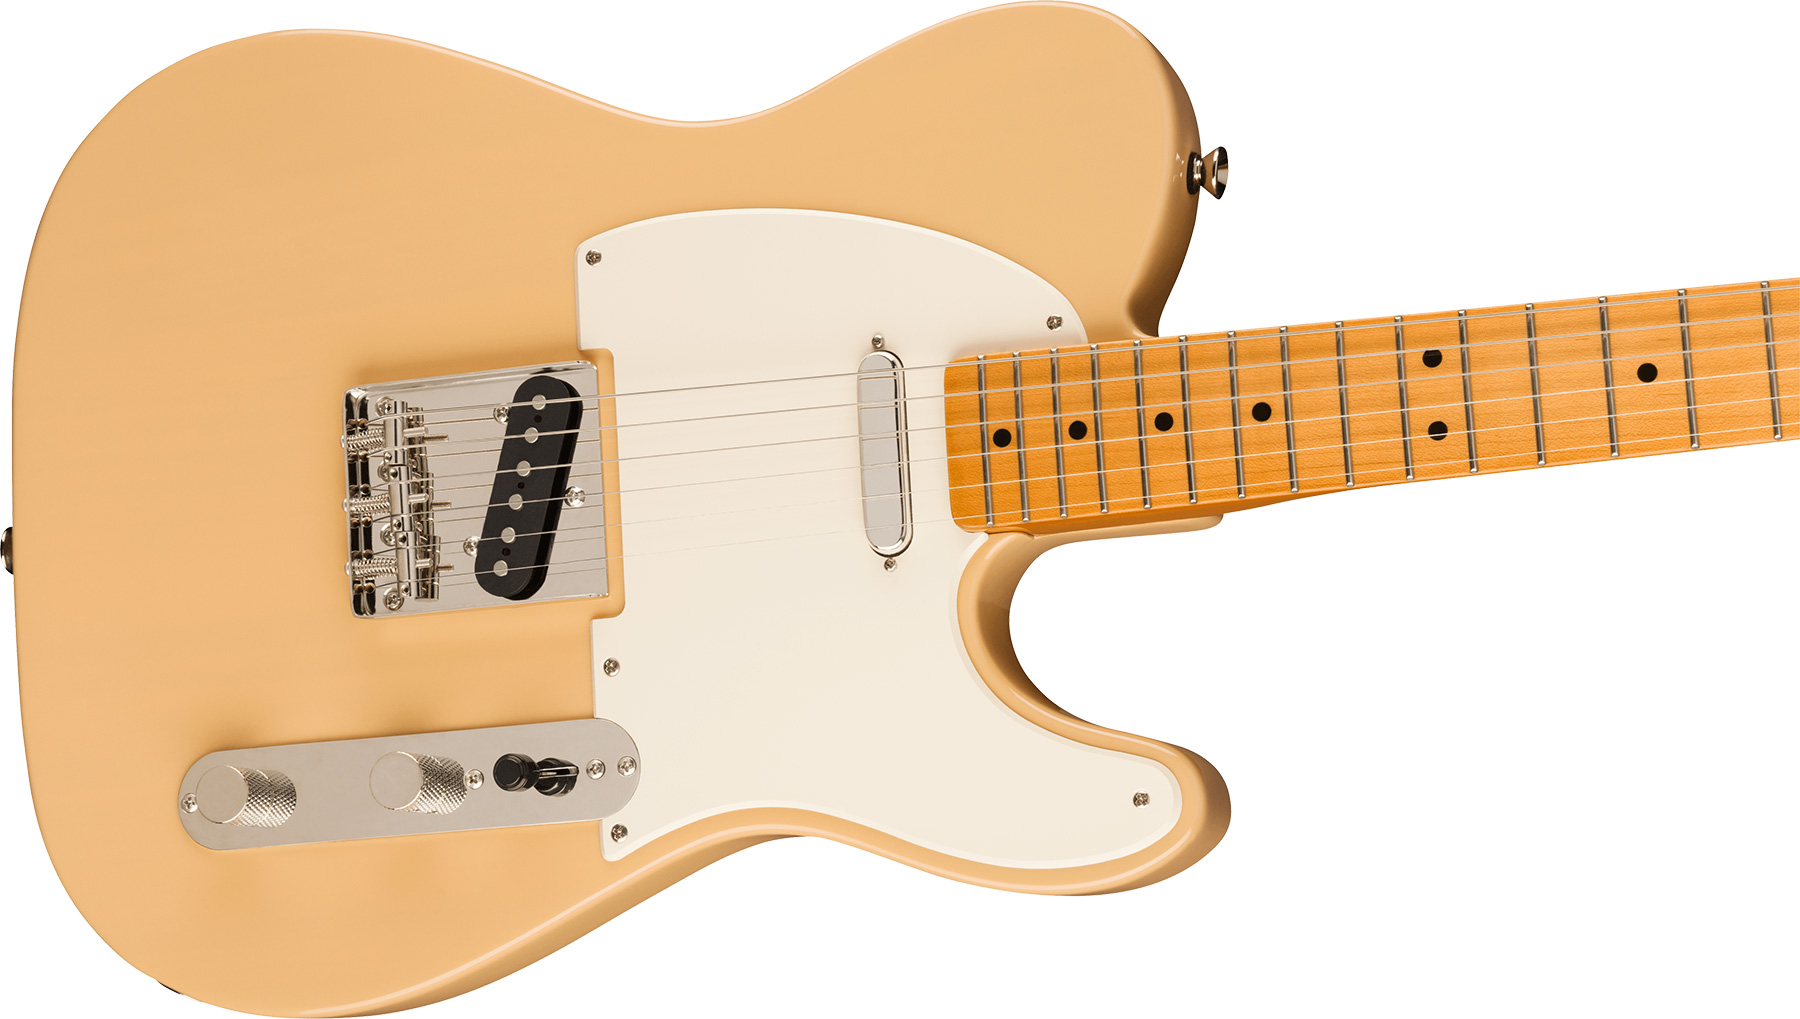 Squier Tele '50s Parchment Pickguard Classic Vibe Fsr 2s Ht Mn - Vintage Blonde - Tel shape electric guitar - Variation 2